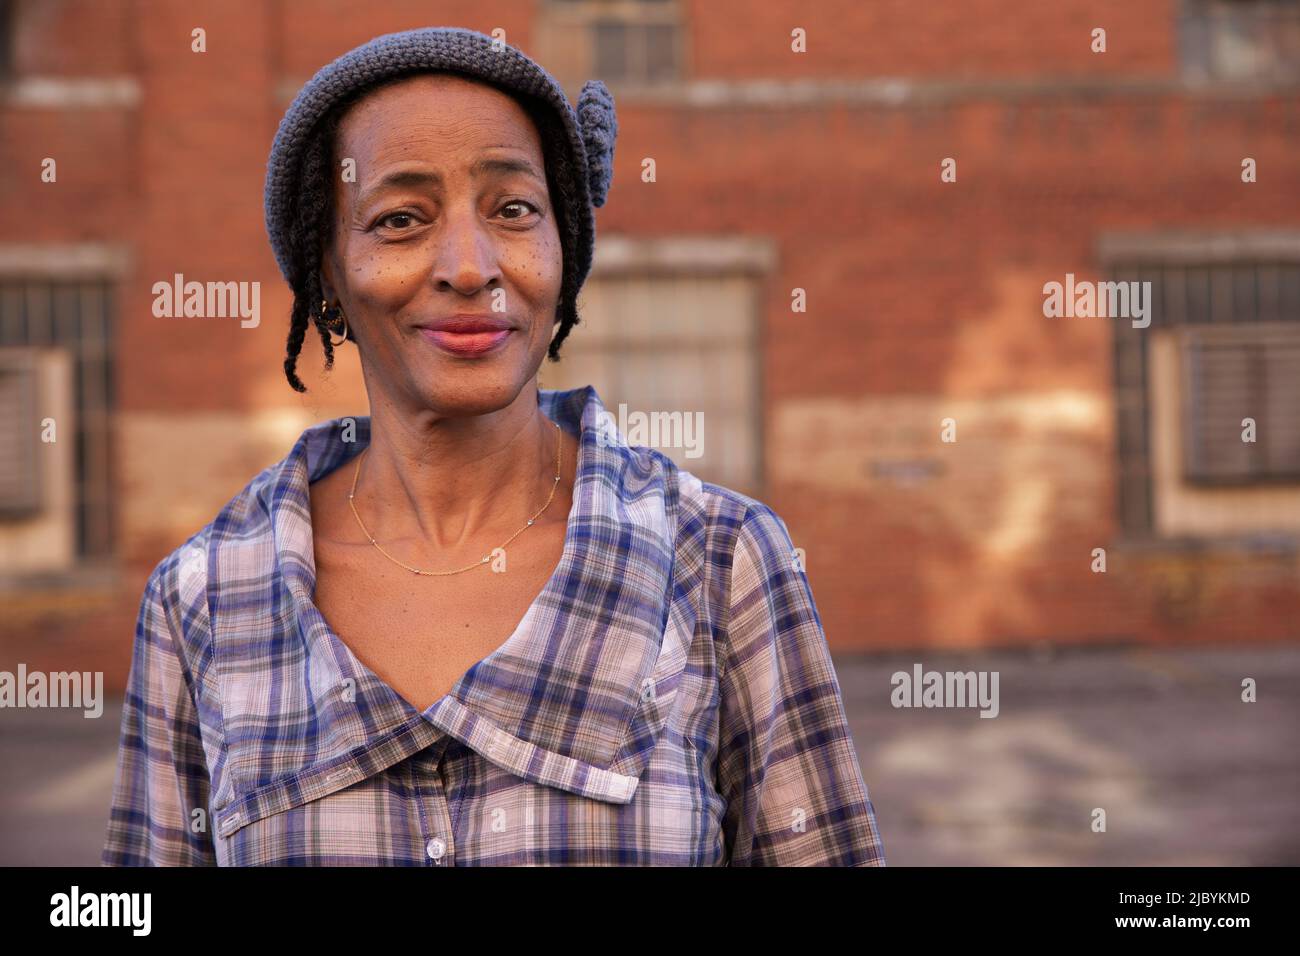 Porträt einer älteren Frau mit Strickmütze, die lächelnd in einer Gasse steht und die Kamera anschaut, Backsteinmauer im Hintergrund Stockfoto